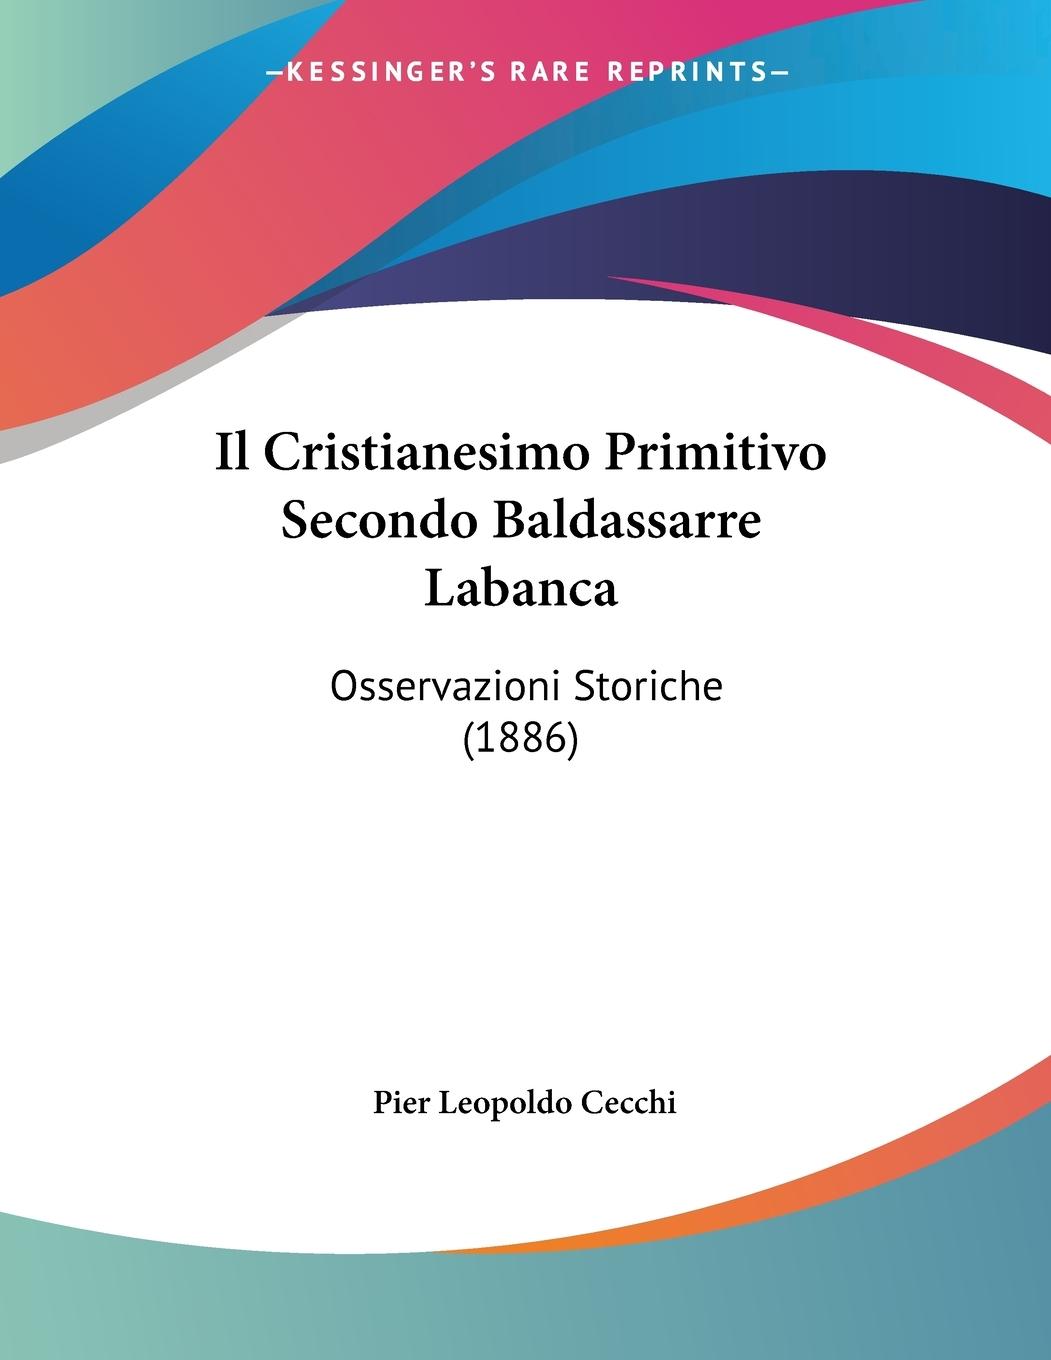 Il Cristianesimo Primitivo Secondo Baldassarre Labanca - Cecchi, Pier Leopoldo